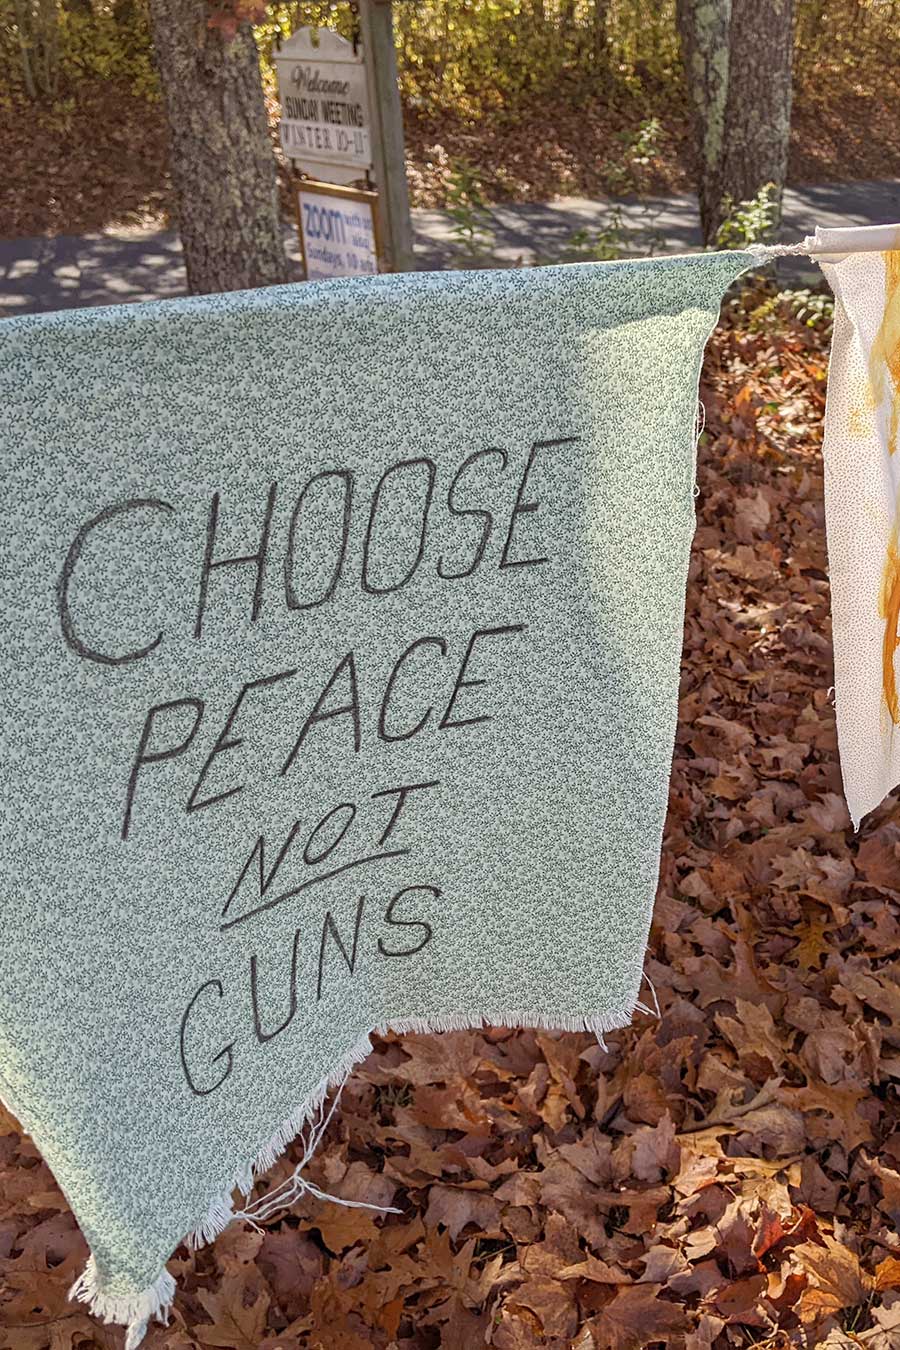 Gun Deaths Flag Project, "Choose Peace, Not Guns"